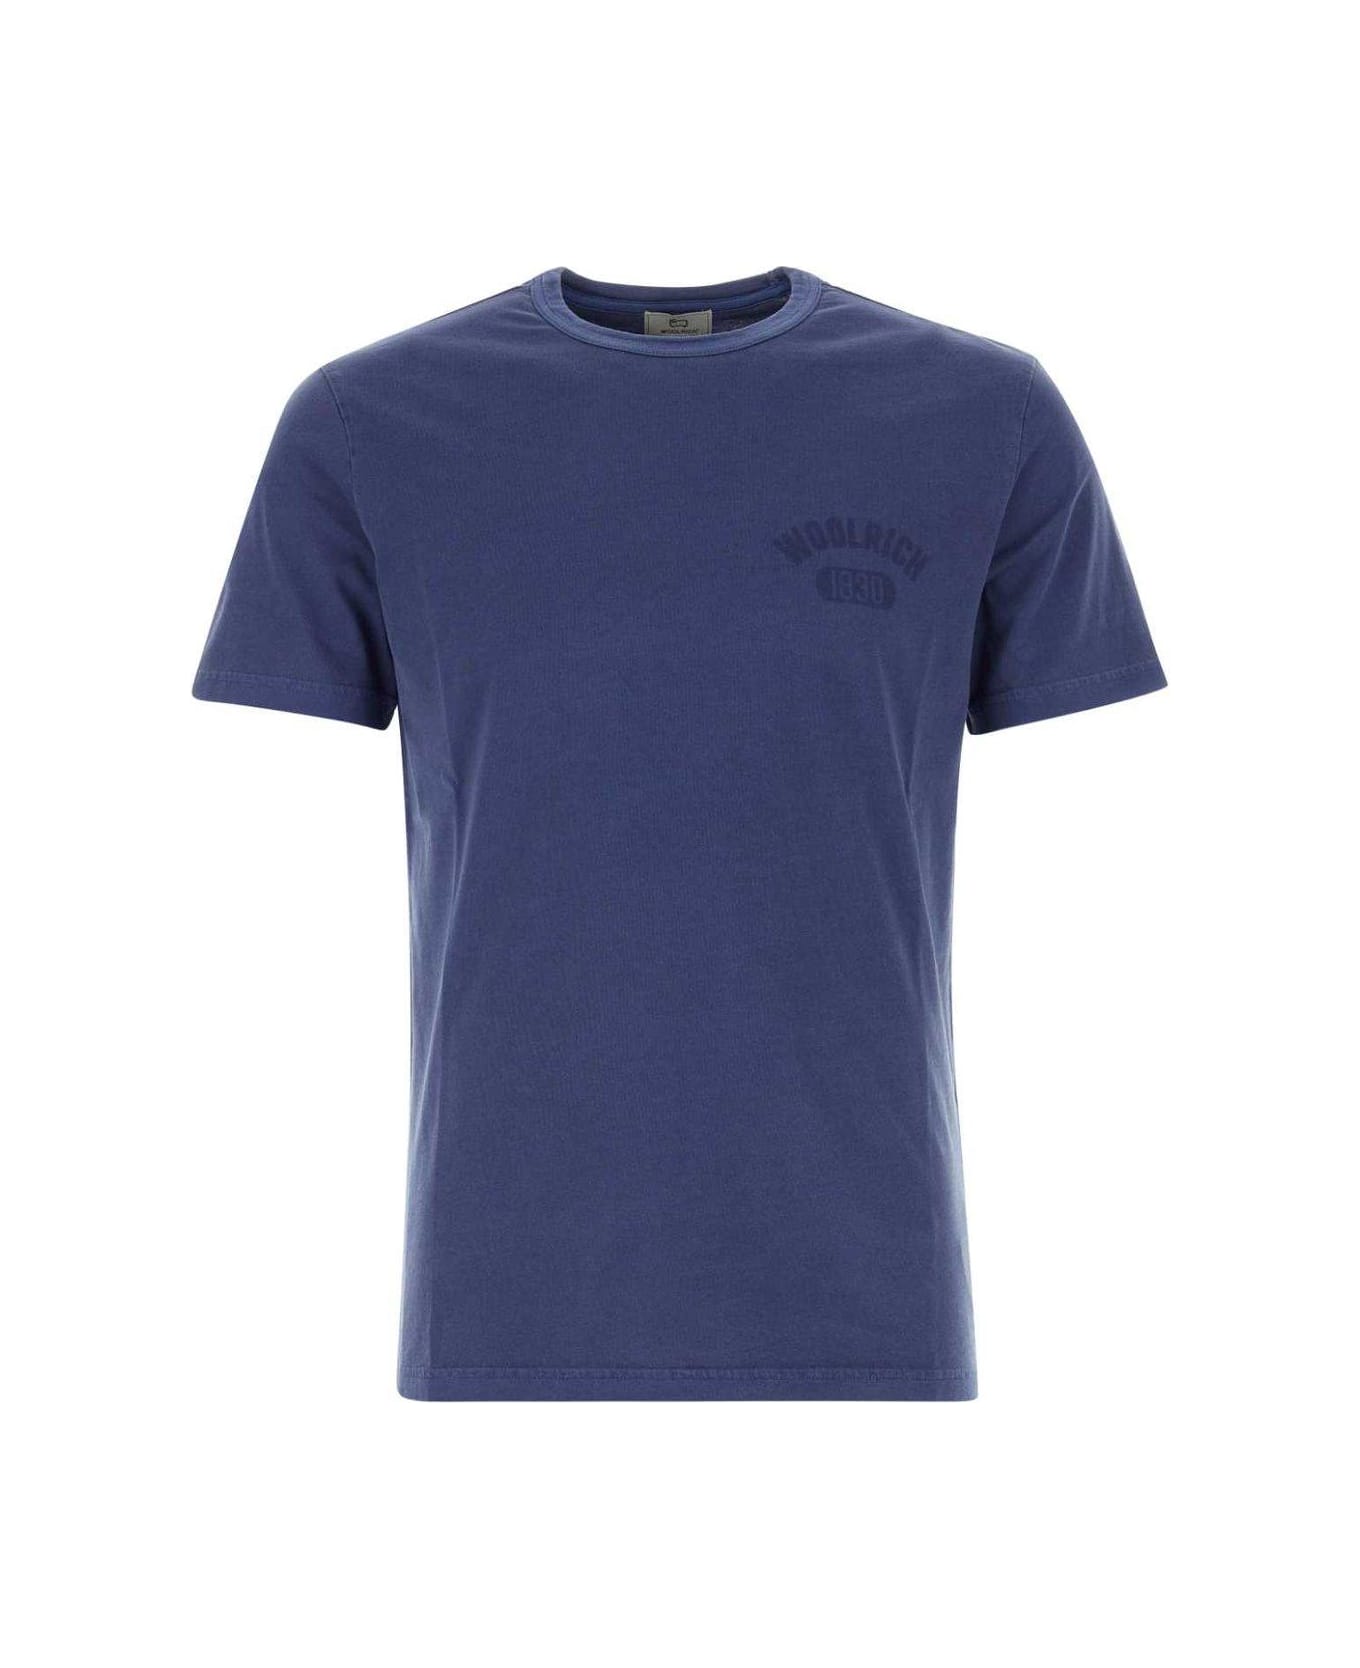 Woolrich Short-sleeved Crewneck T-shirt - Maritime blue